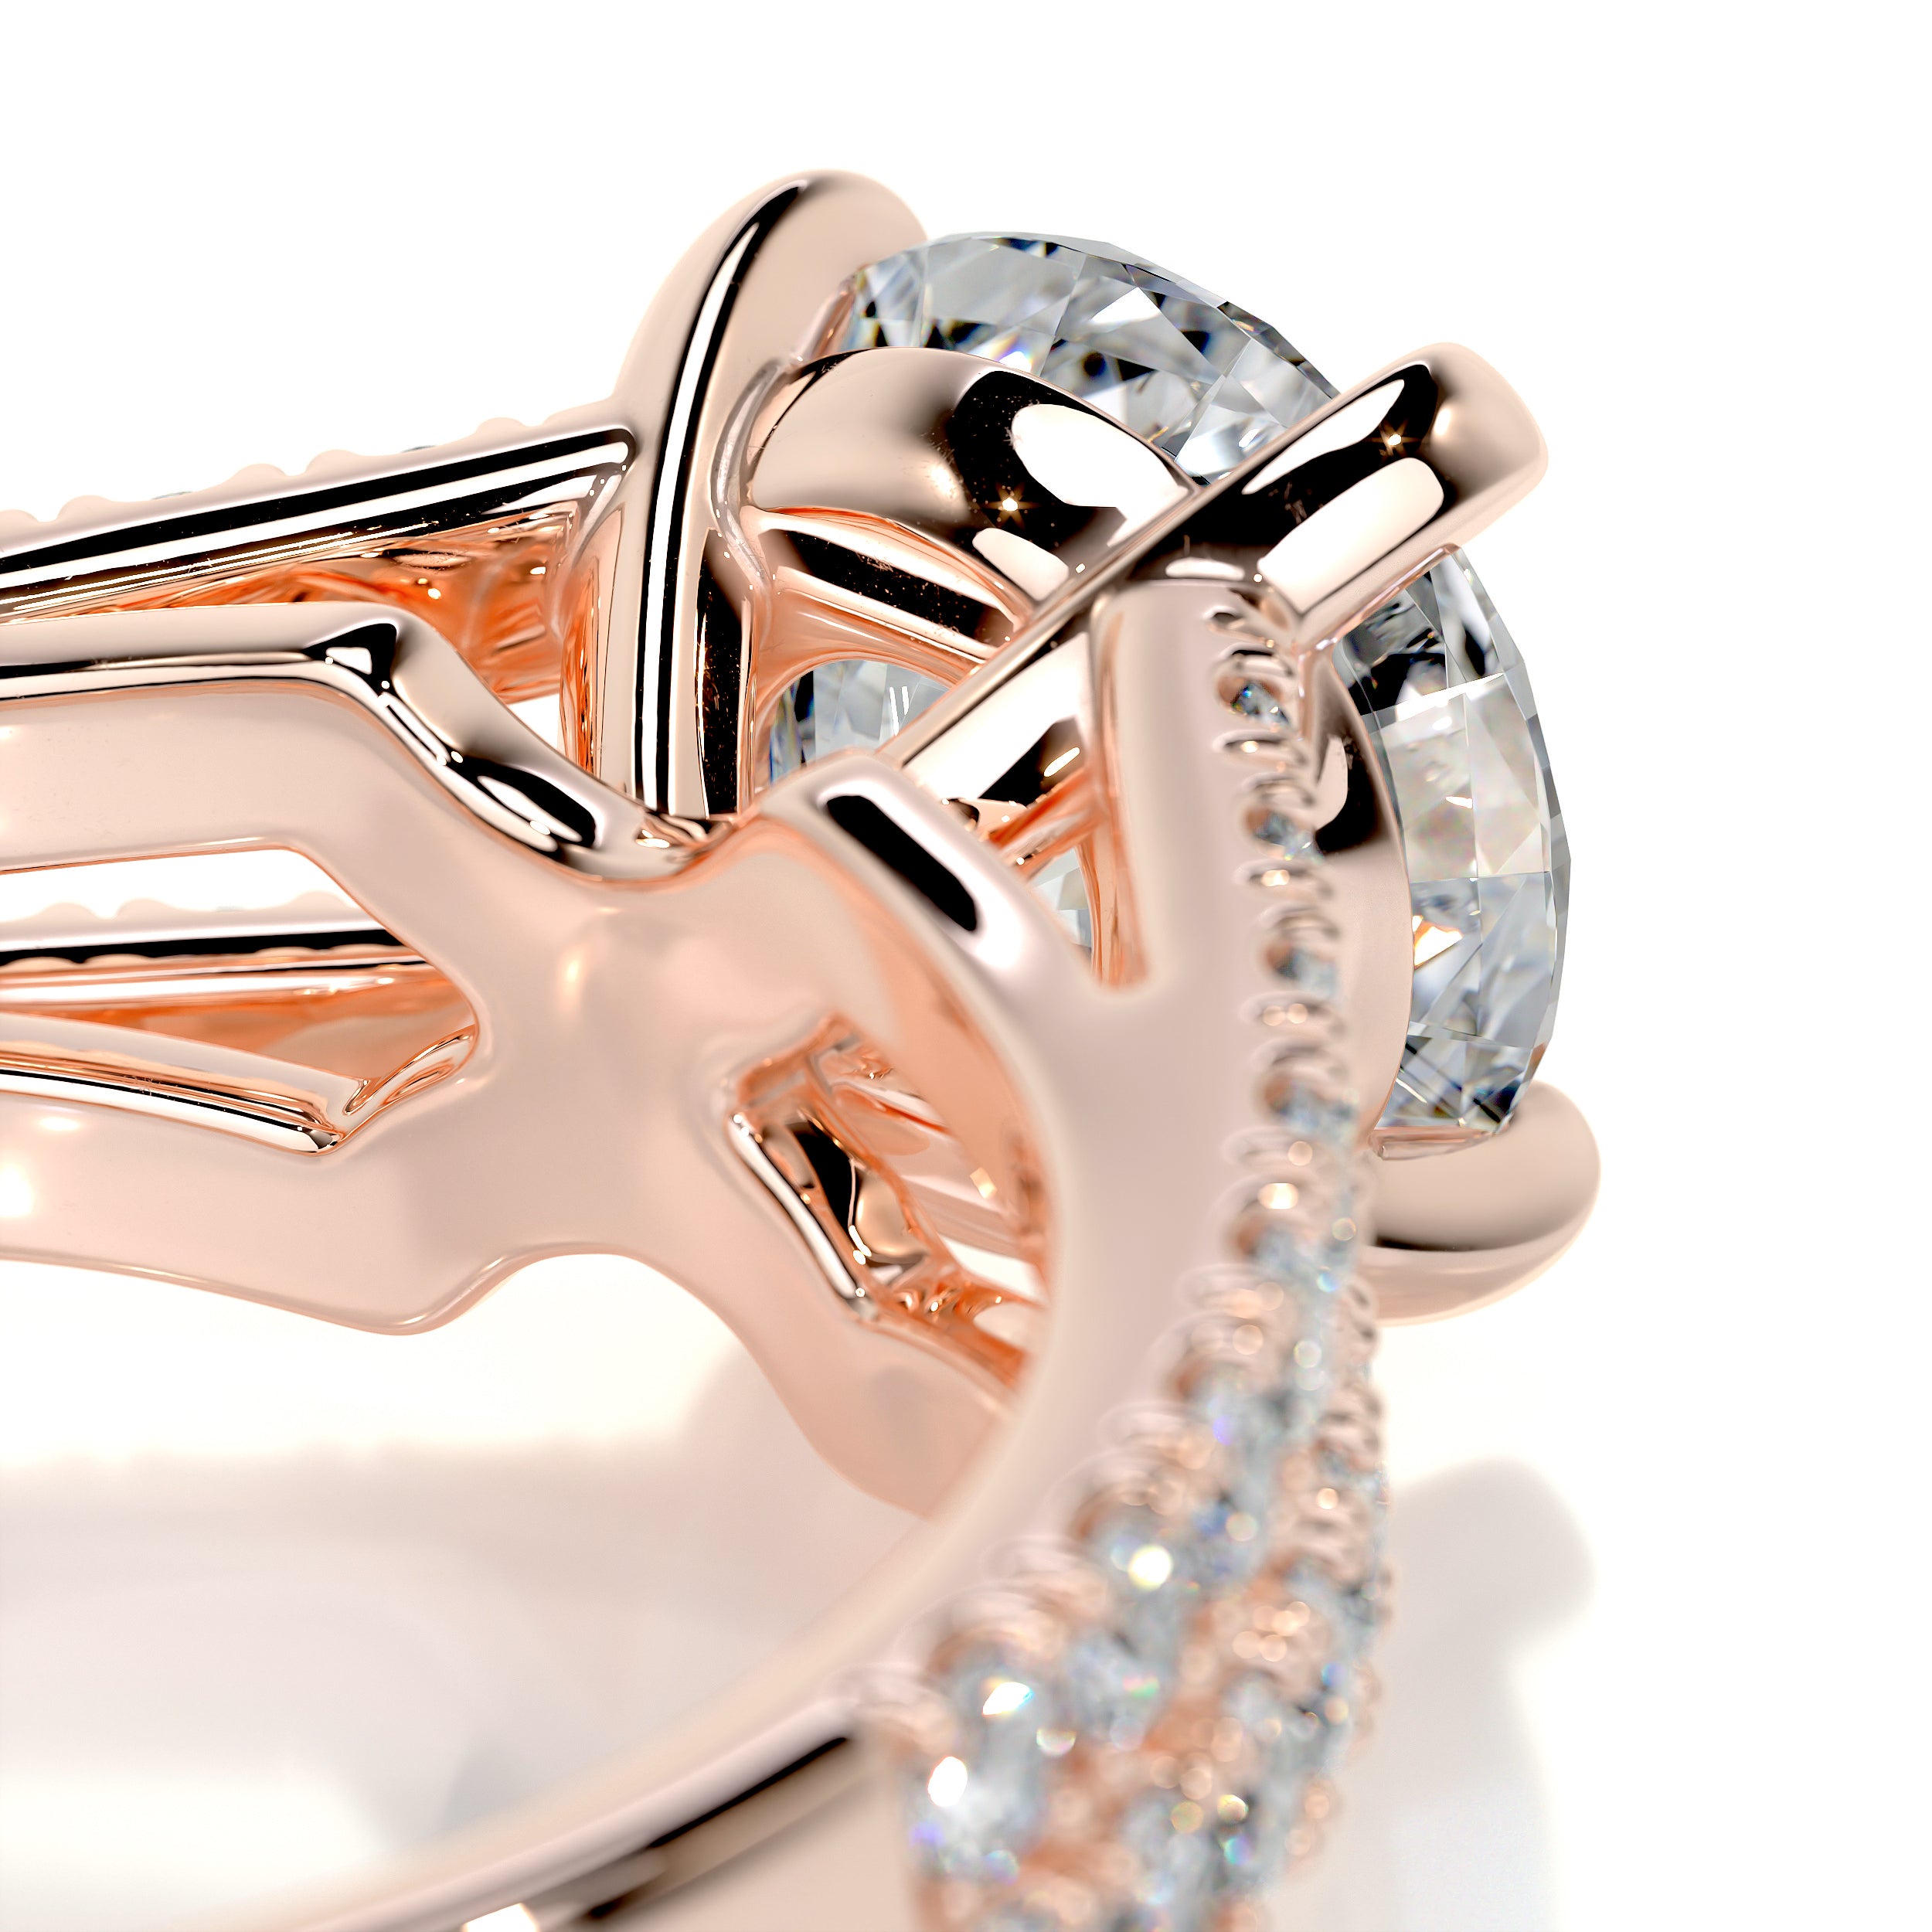 Sadie Diamond Engagement Ring   (2 Carat) -14K Rose Gold